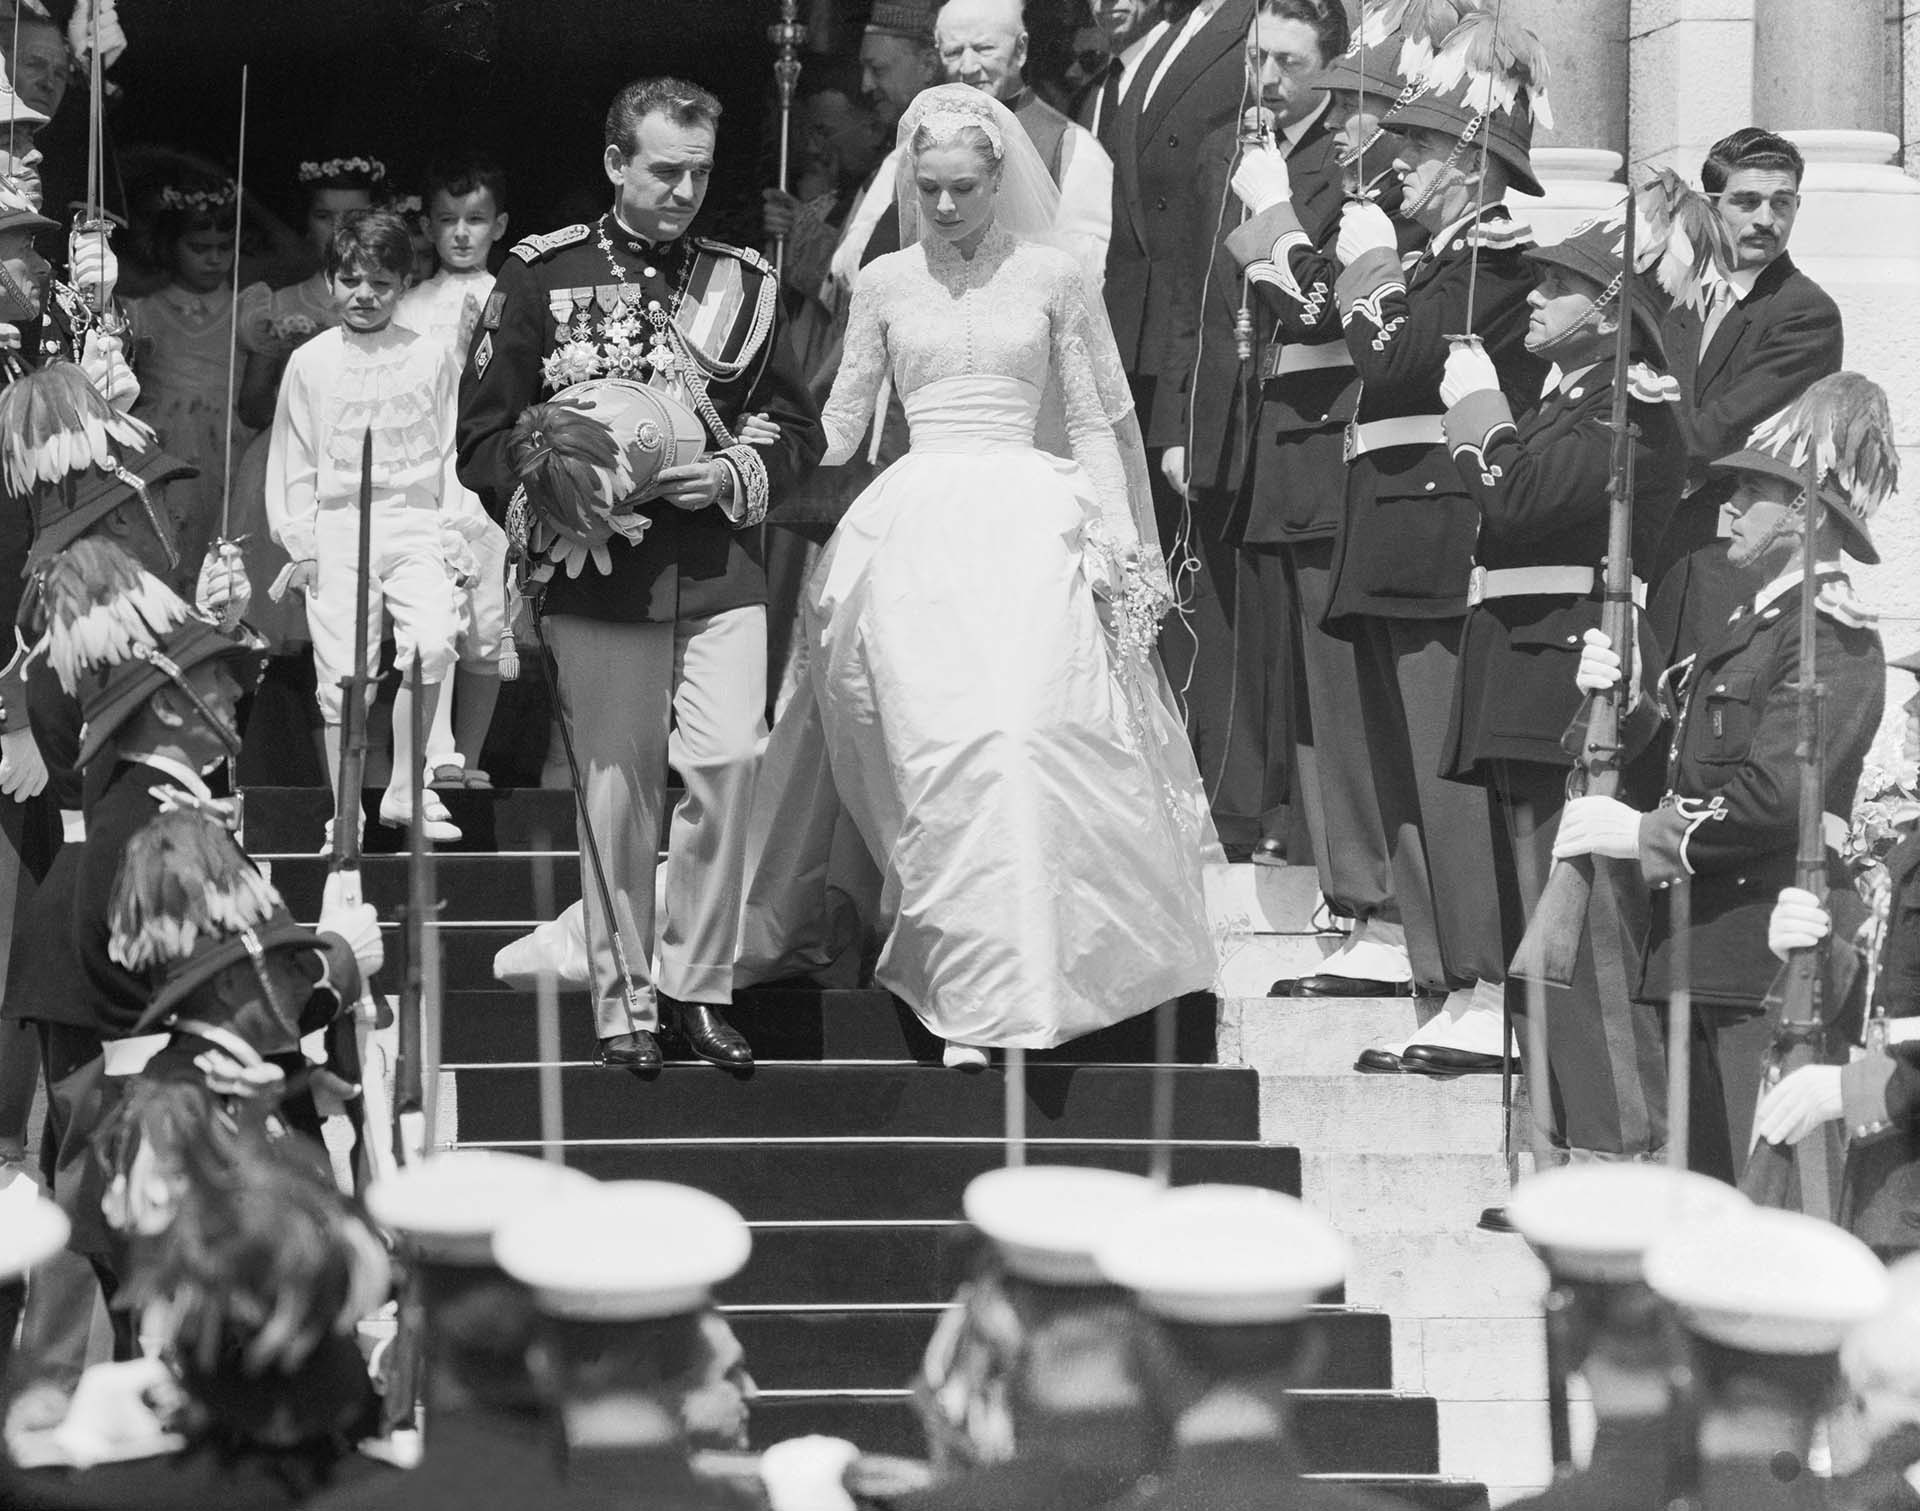 (Original Caption) El casamiento, en abril de 1956, de Rainiero Y Grace Kelly fue un evento mediático, uno de los primeros. 2.000 fotógrafos y televisión en directo para Francia